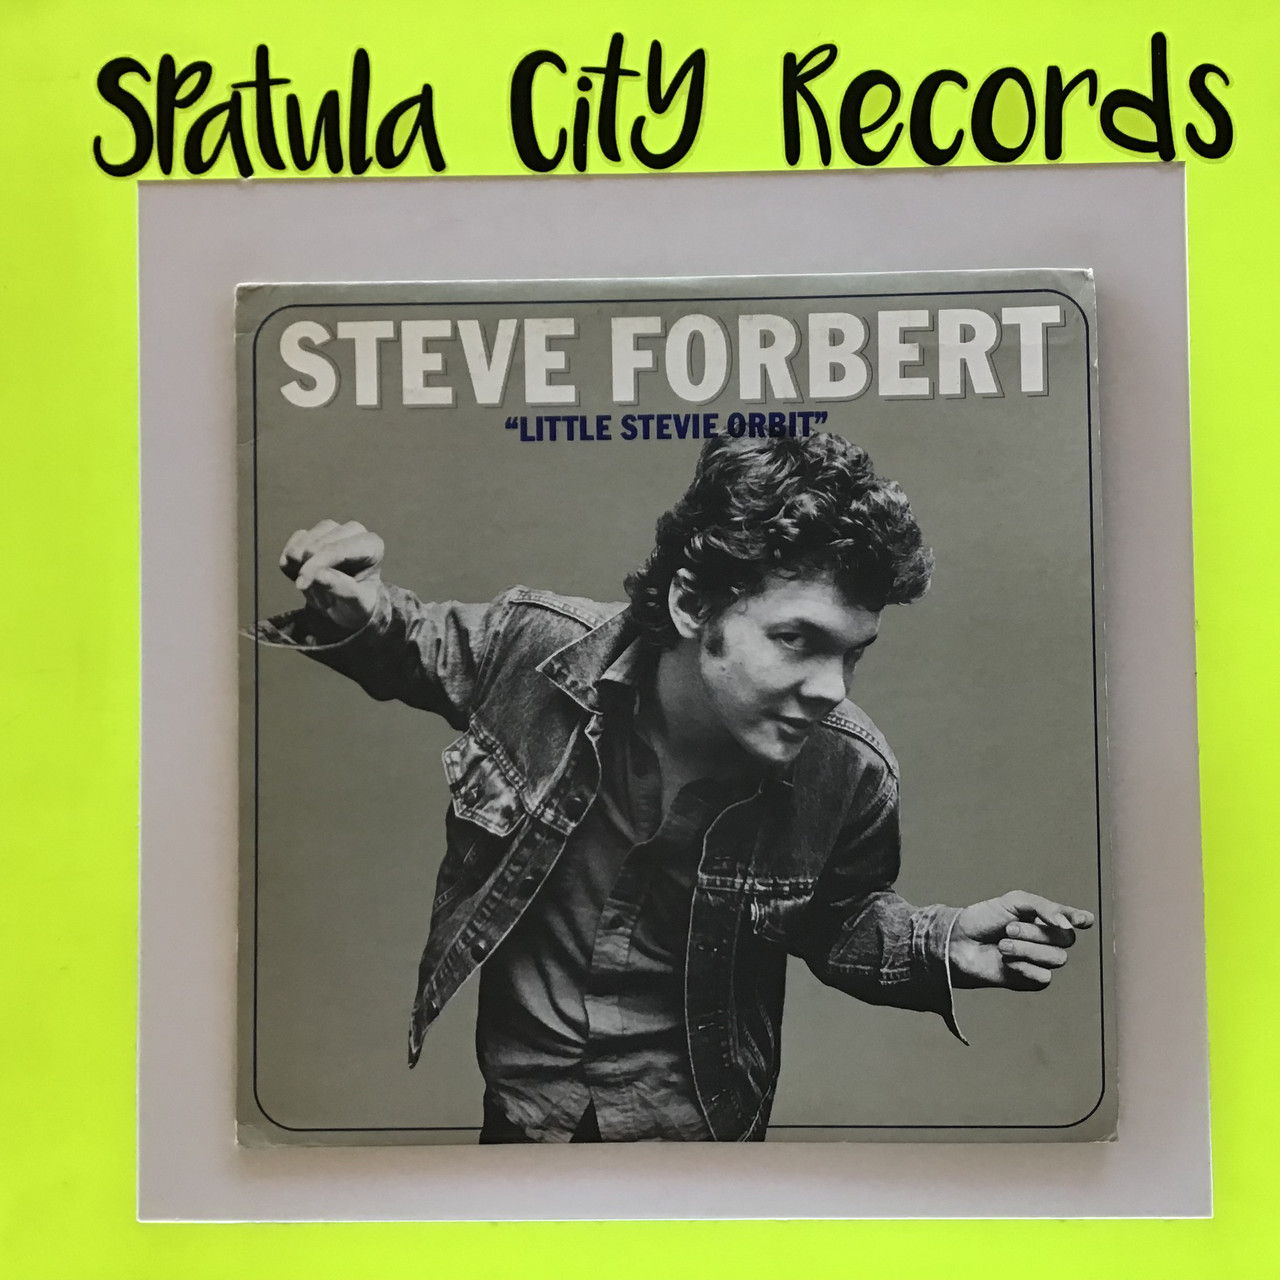 Steve Forbert - Little Stevie Orbit - WLP PROMO - vinyl record album LP